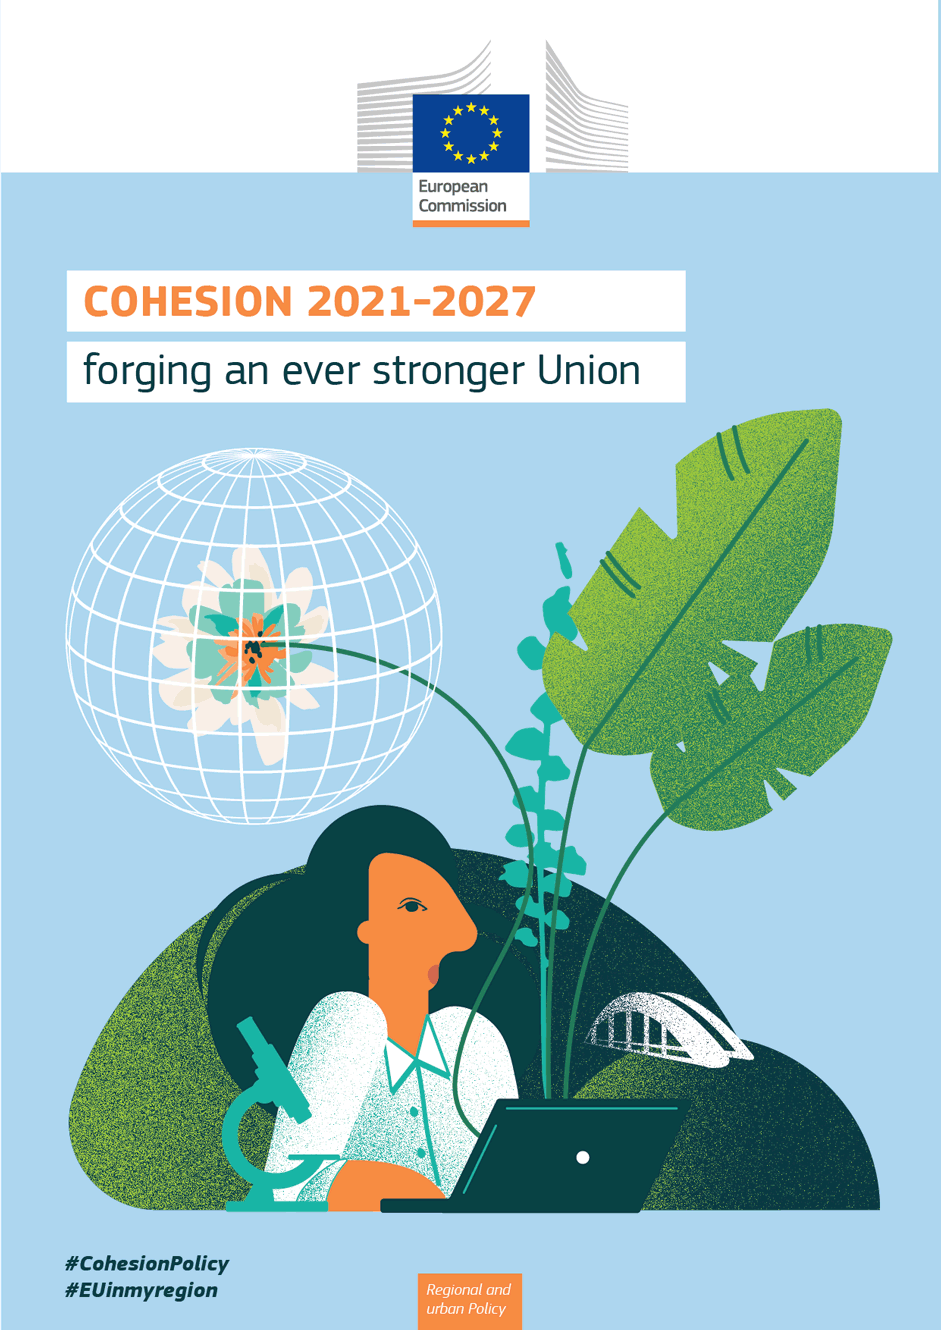 ES sanglaudos politika. Tikimasi, kad 2021–2027 m. programomis ES bus sukurta 1,3 mln. darbo vietų